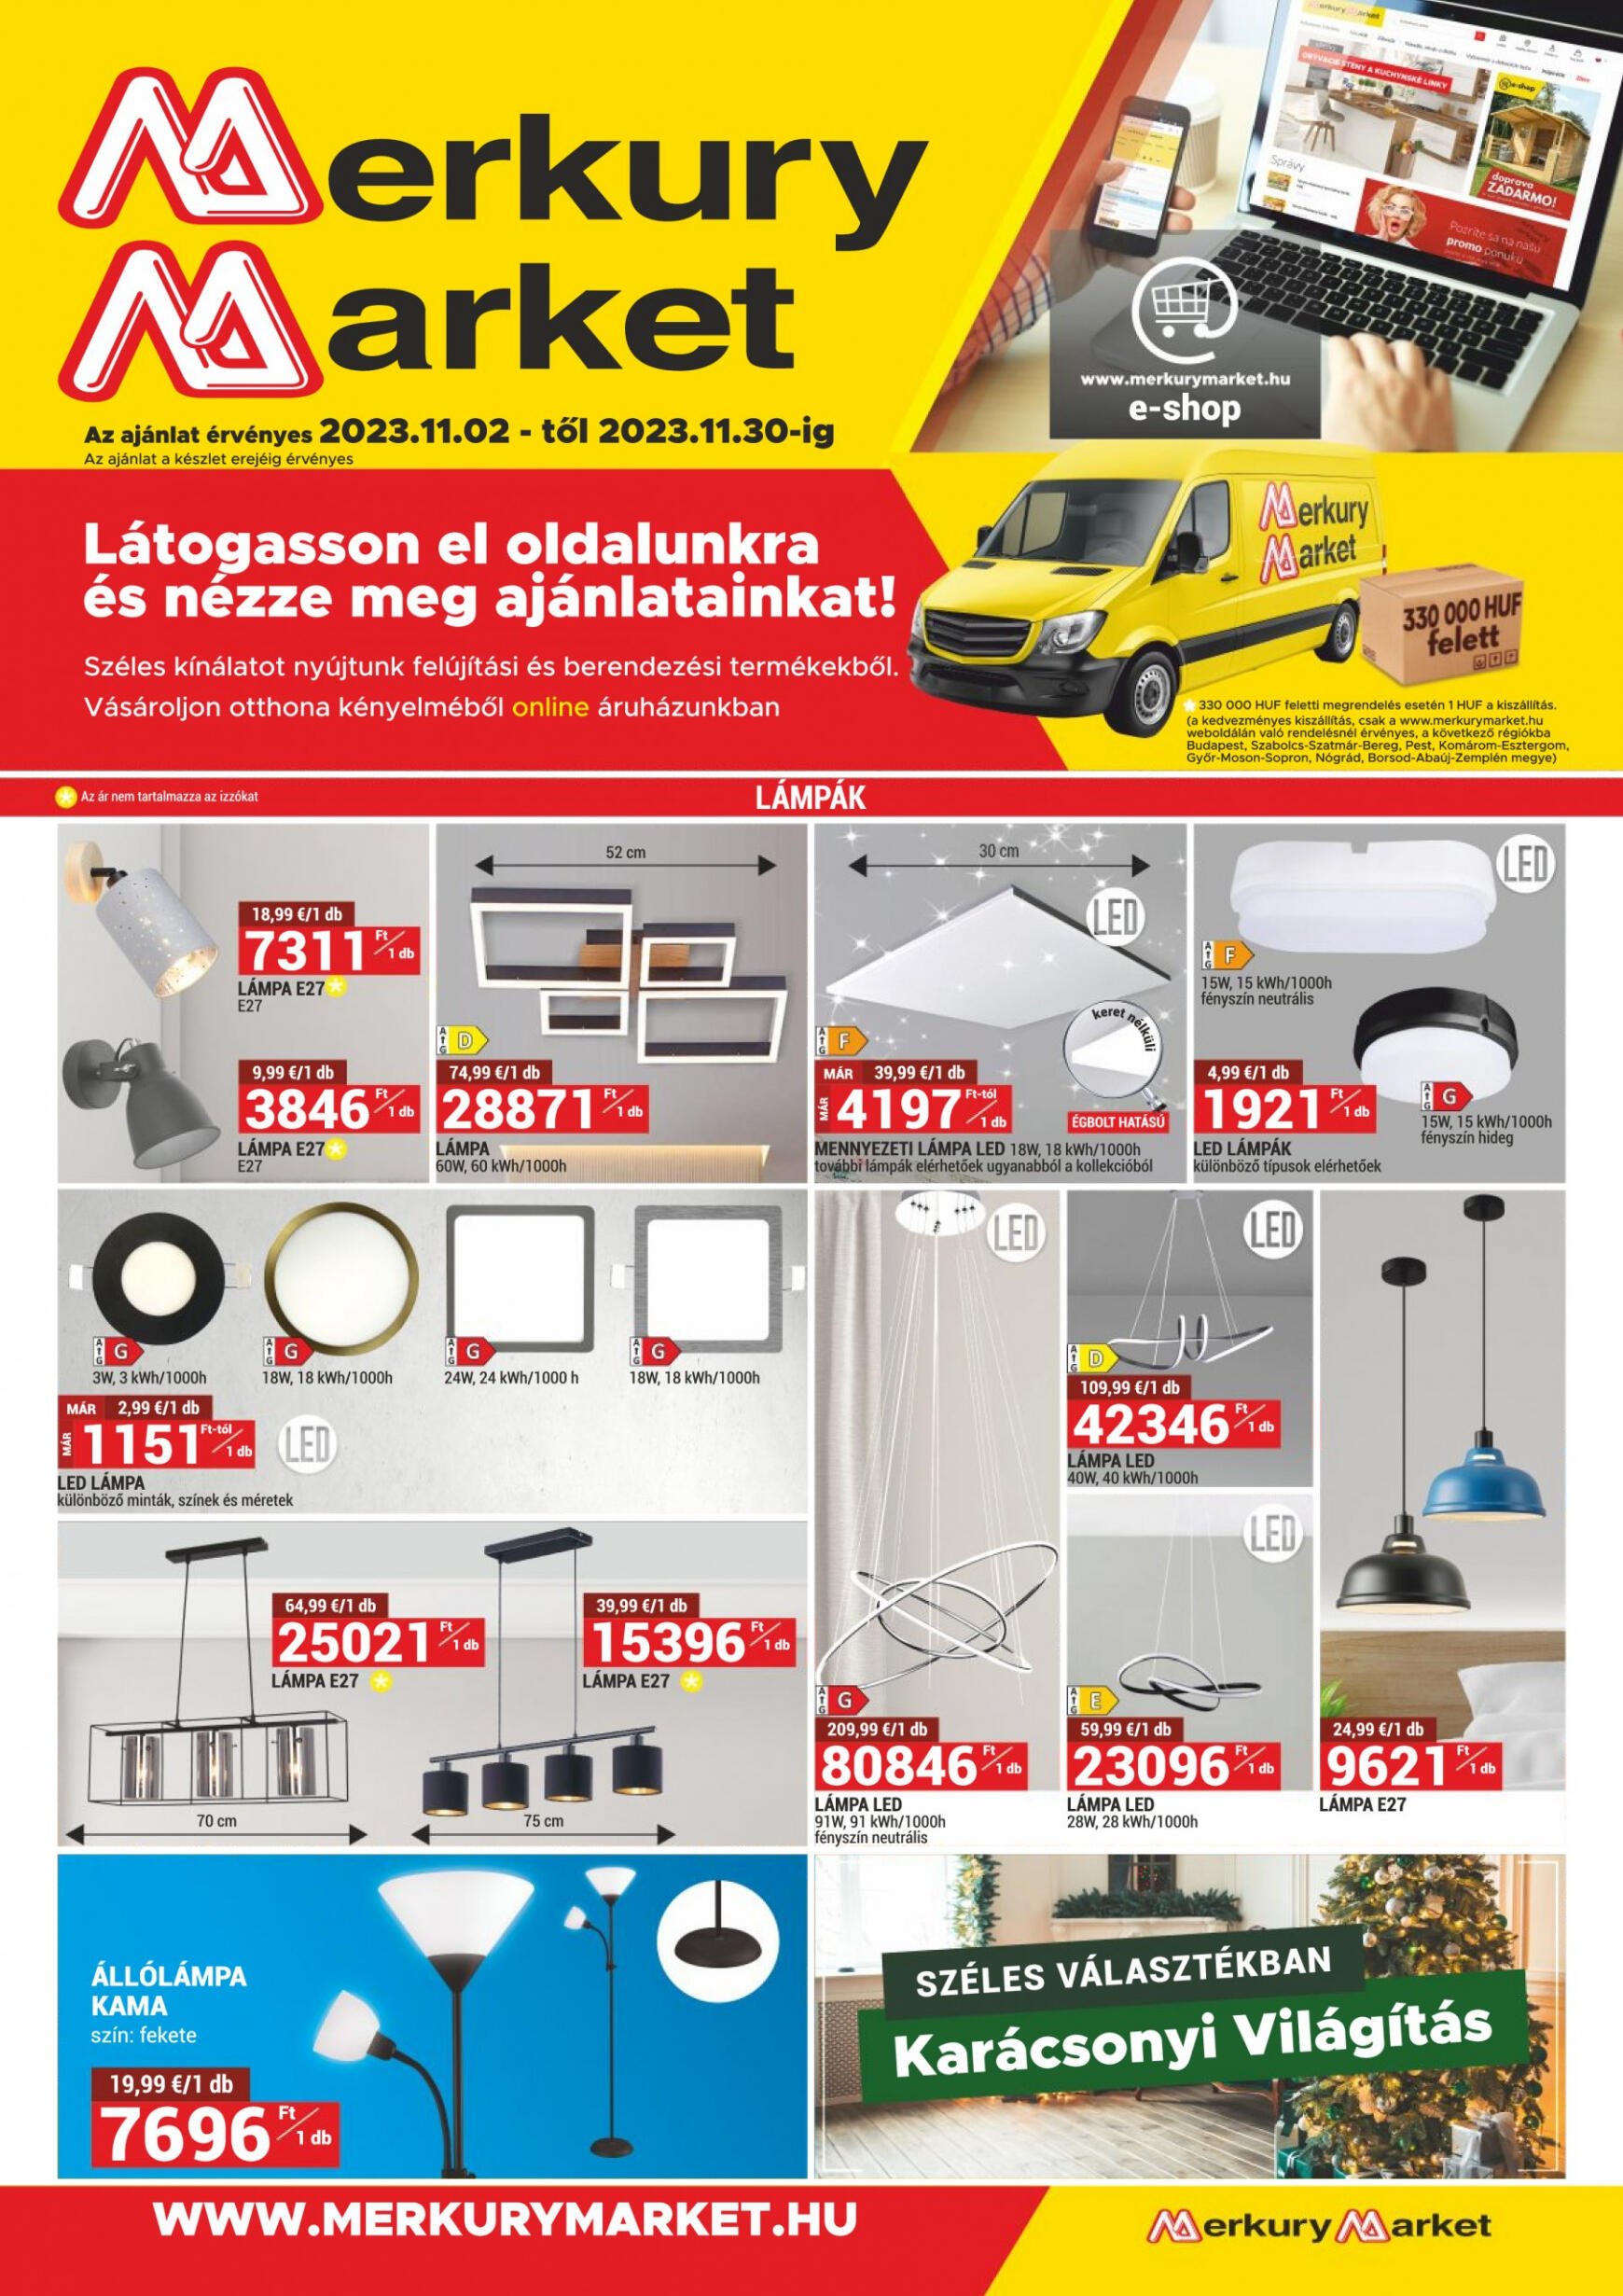 merkury-market - Merkury Market újság csütörtöktől 11.02. - page: 1